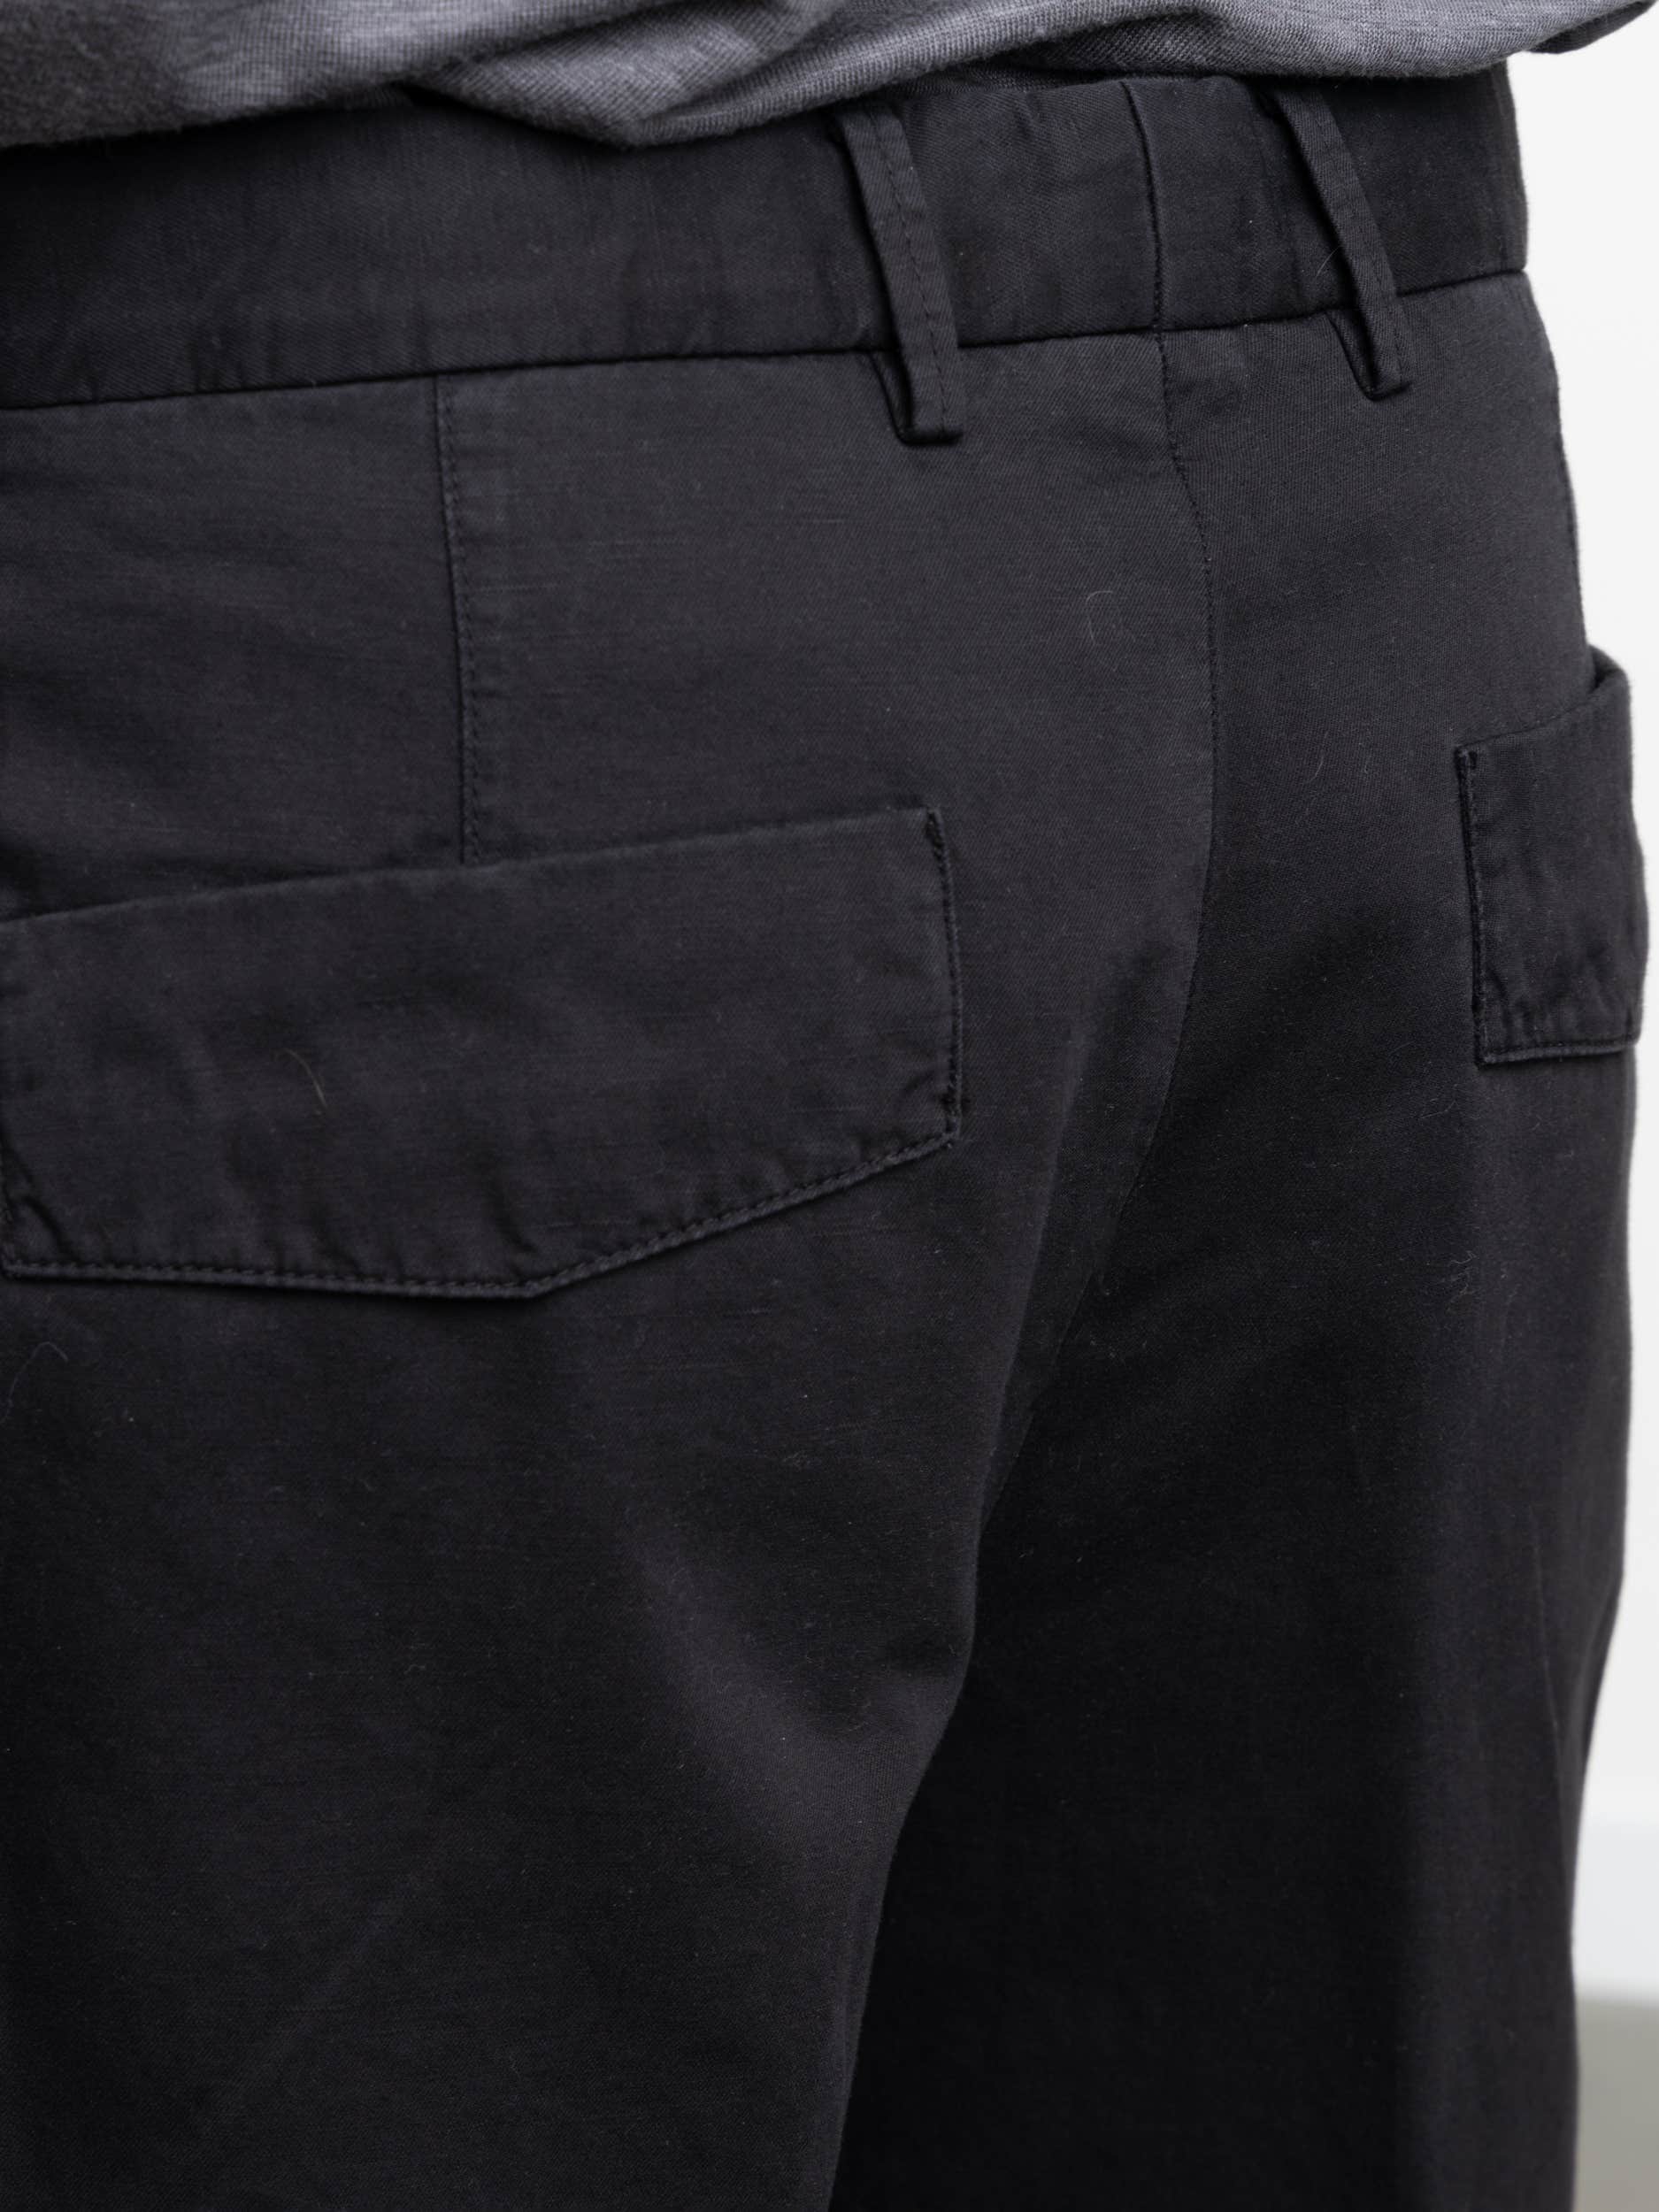 Black Cotton-Linen Shorts